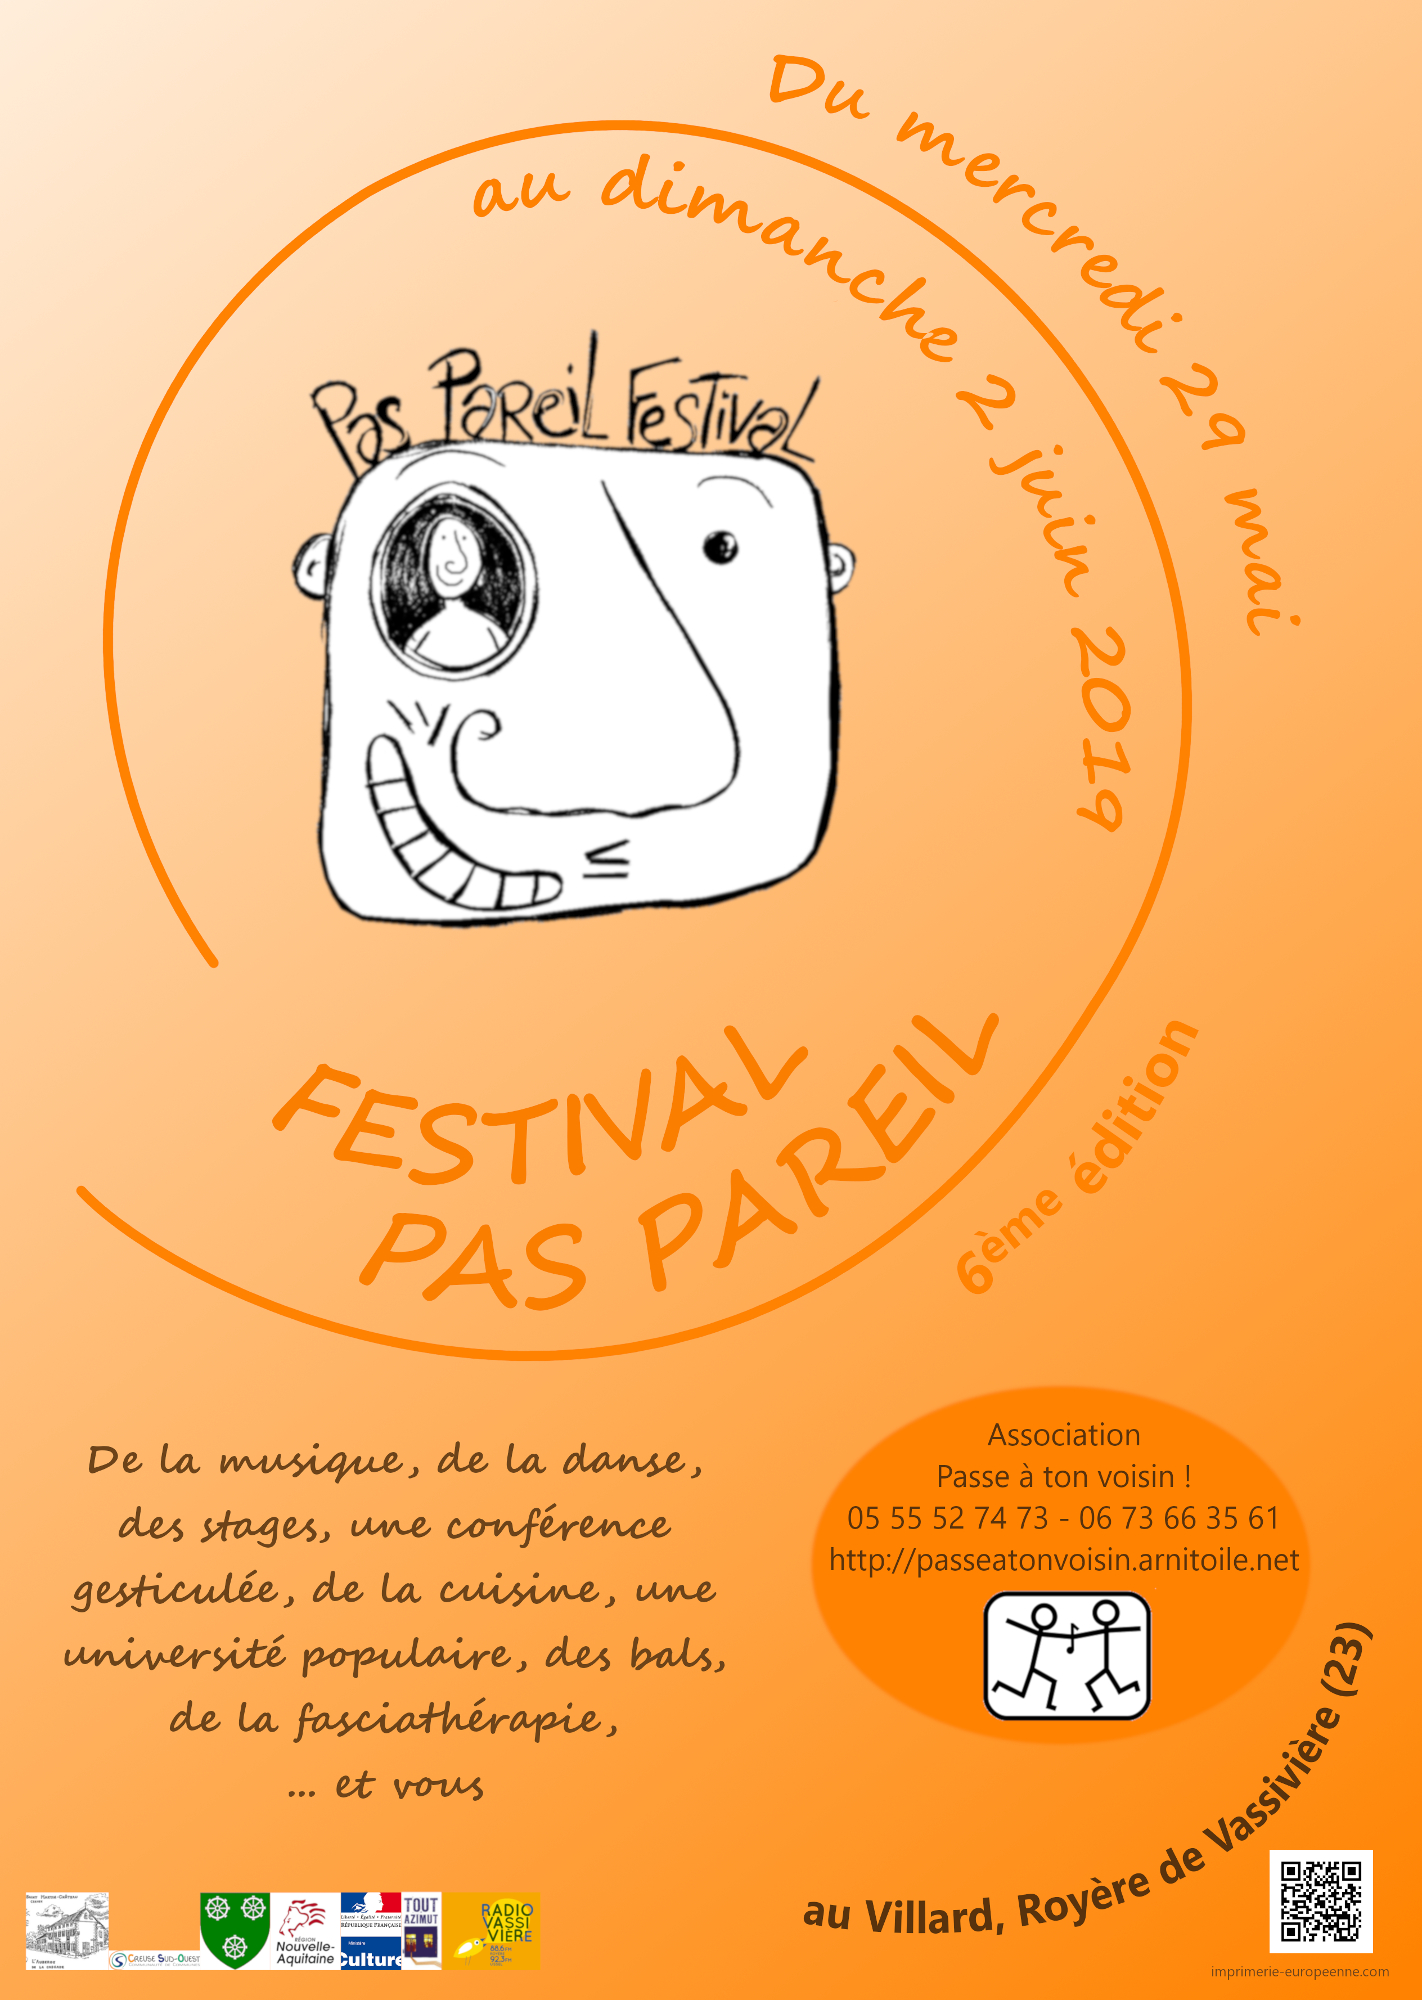 Festival Pas Pareil 6